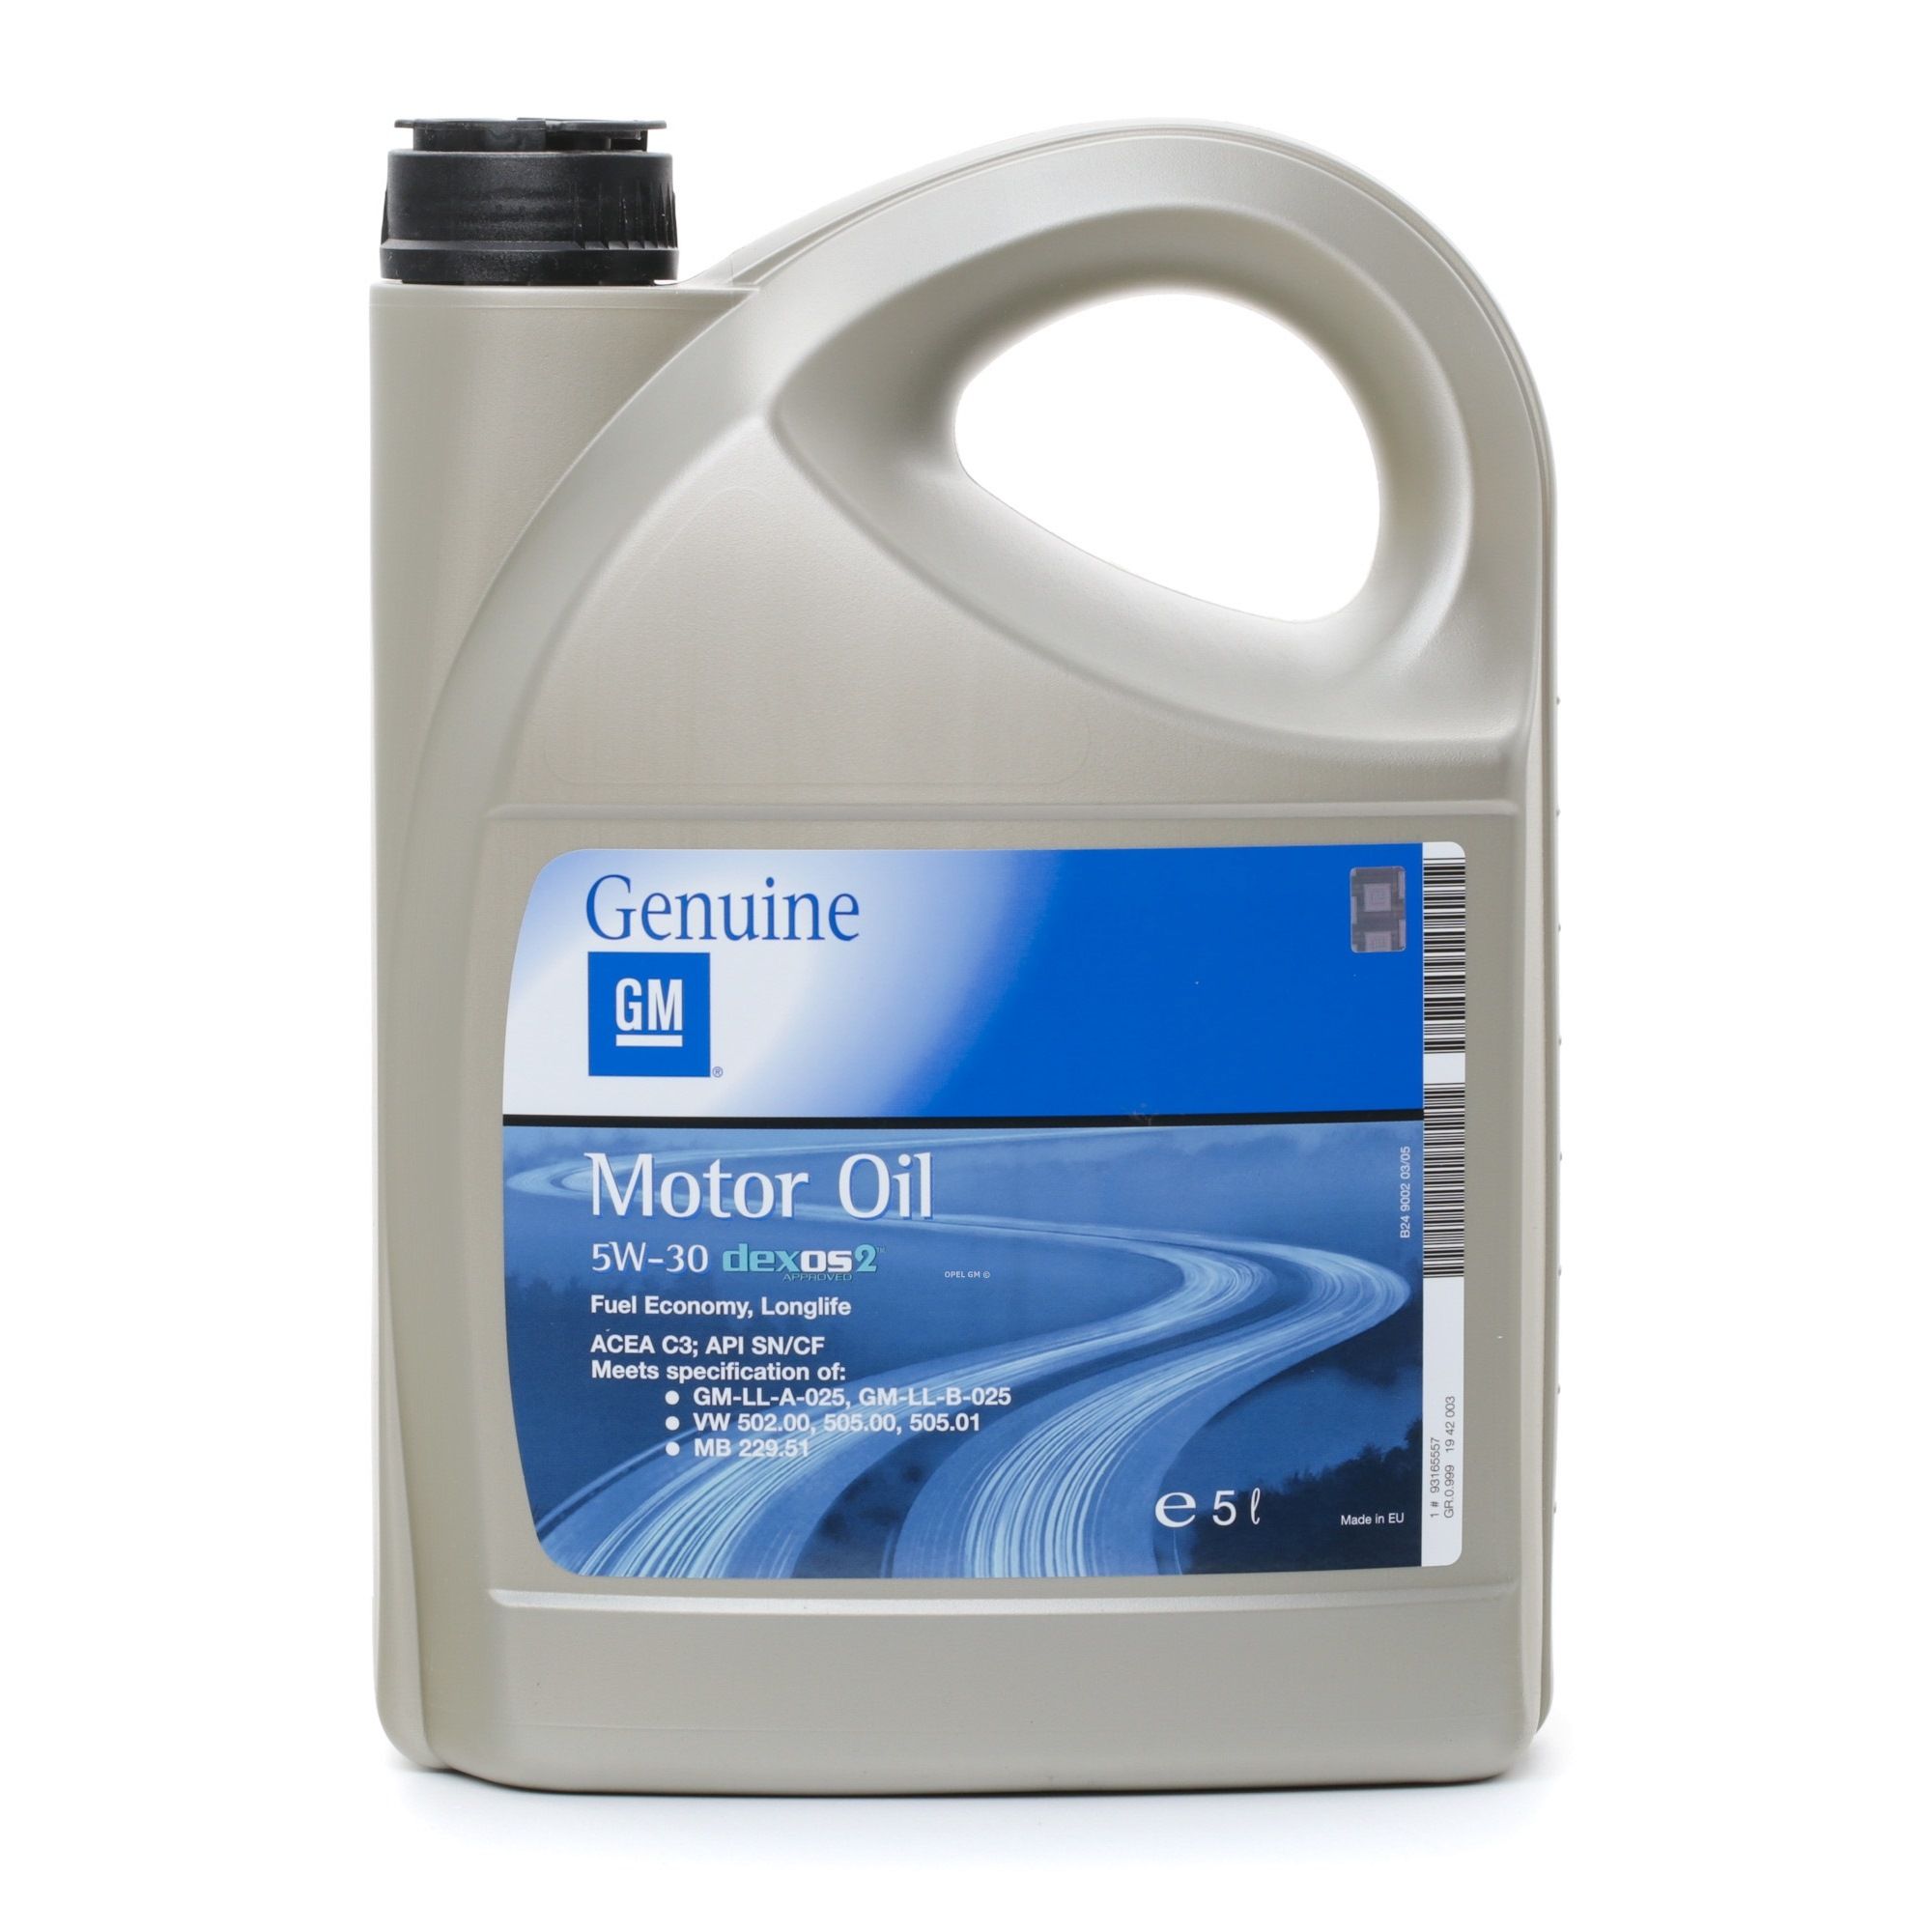 Motorolie OPEL GM 19 42 003 - Oliën & vloeistoffen auto-onderdelen voor Volkswagen order